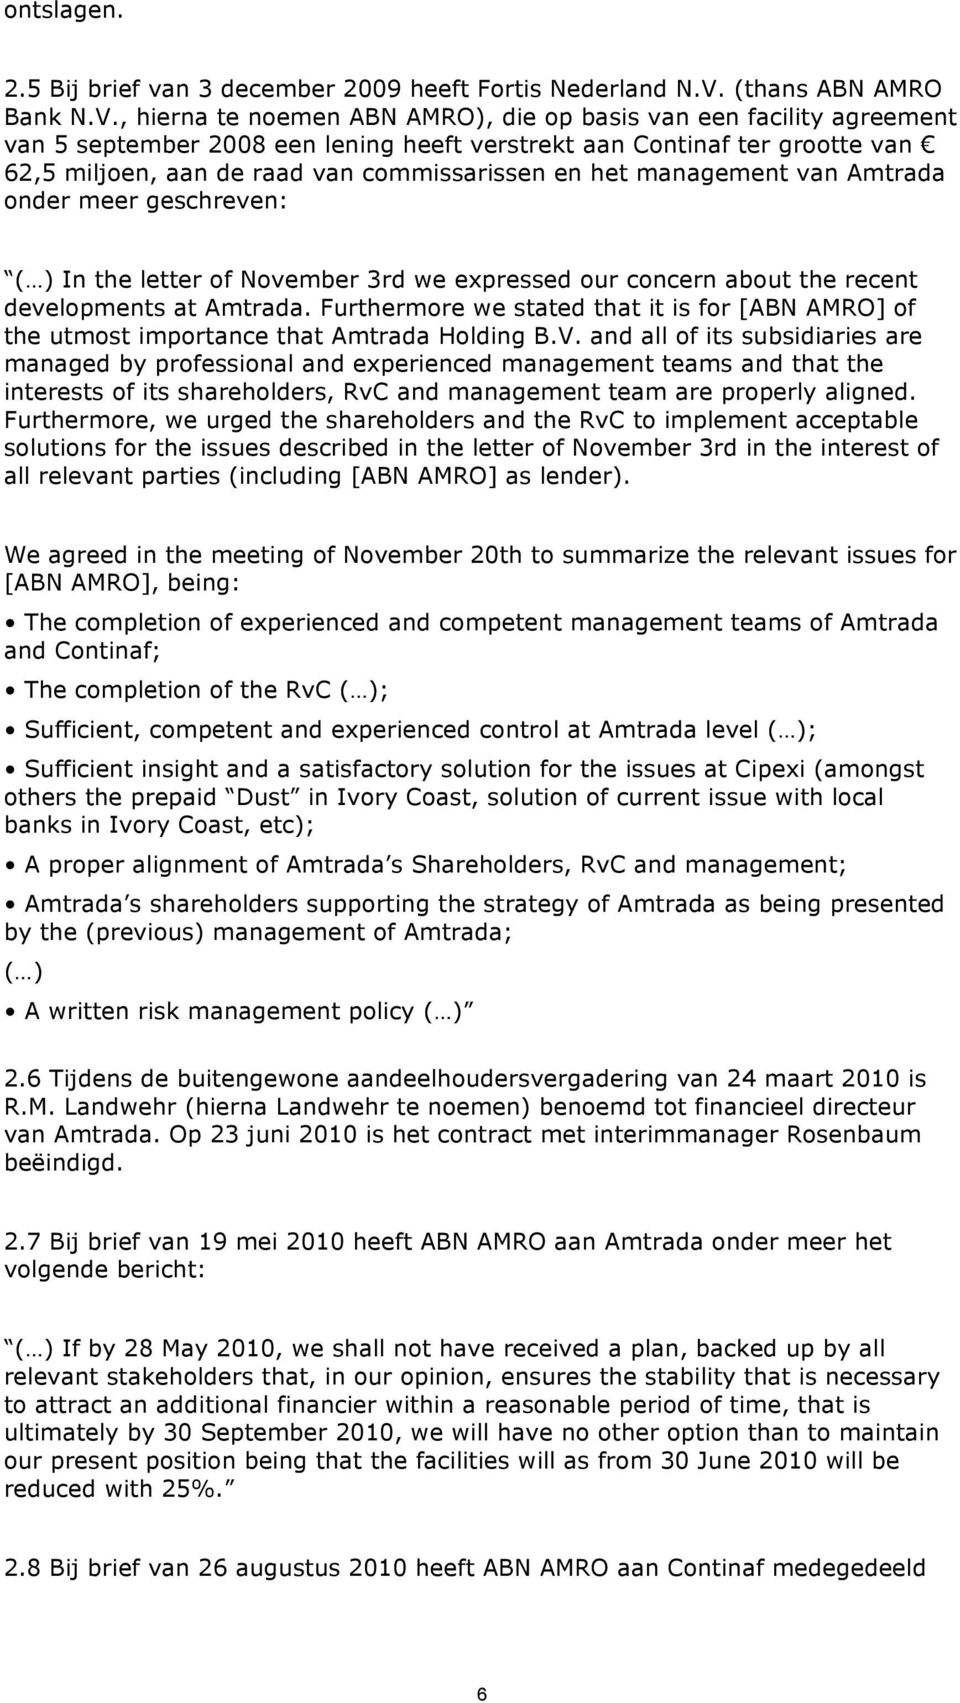 , hierna te noemen ABN AMRO), die op basis van een facility agreement van 5 september 2008 een lening heeft verstrekt aan Continaf ter grootte van 62,5 miljoen, aan de raad van commissarissen en het